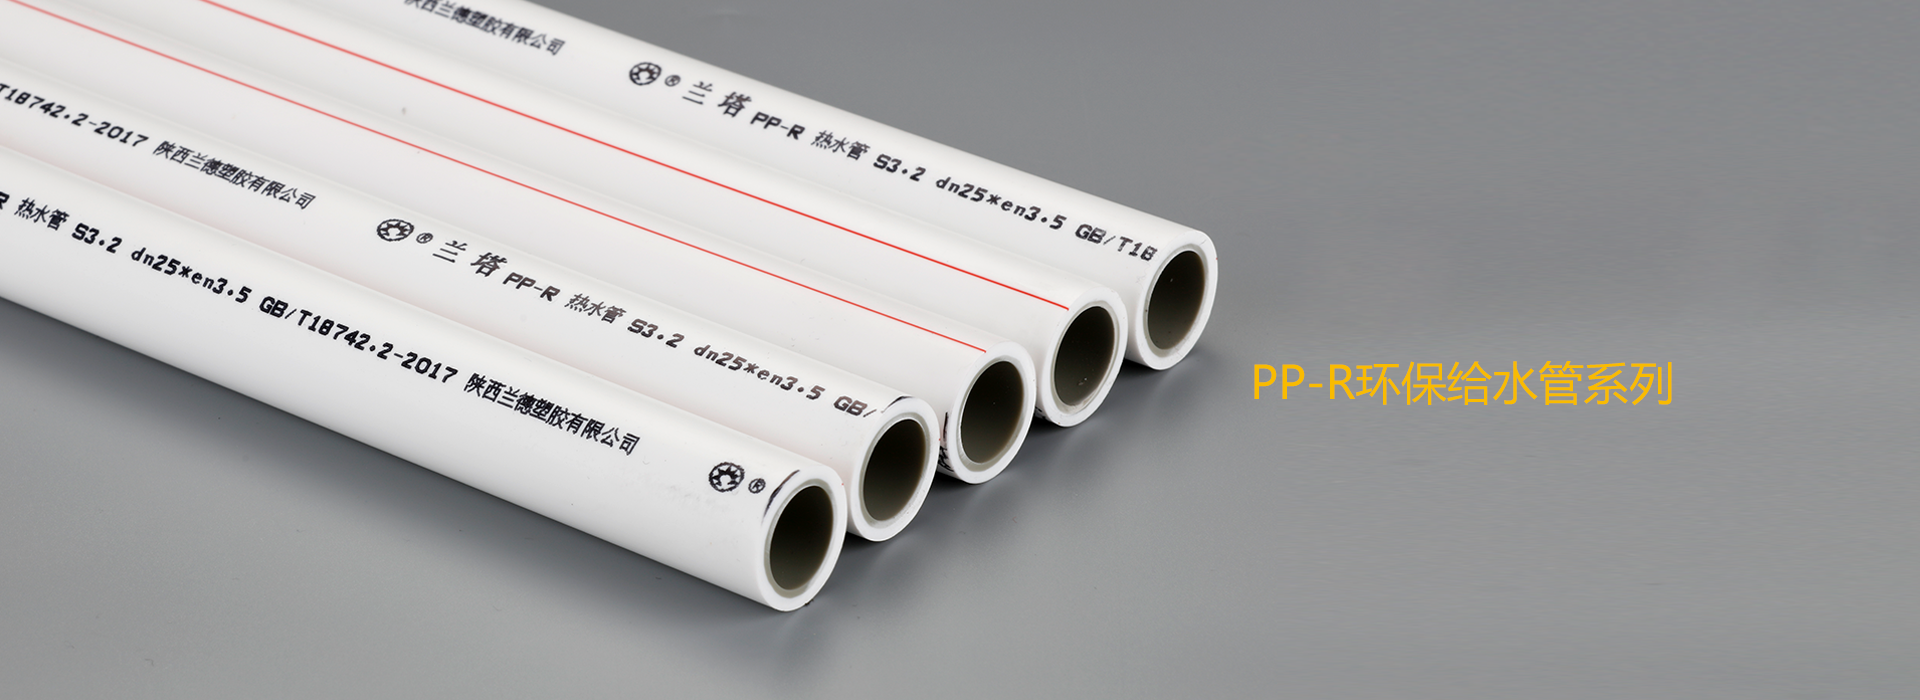 PP-R环保给水管系列